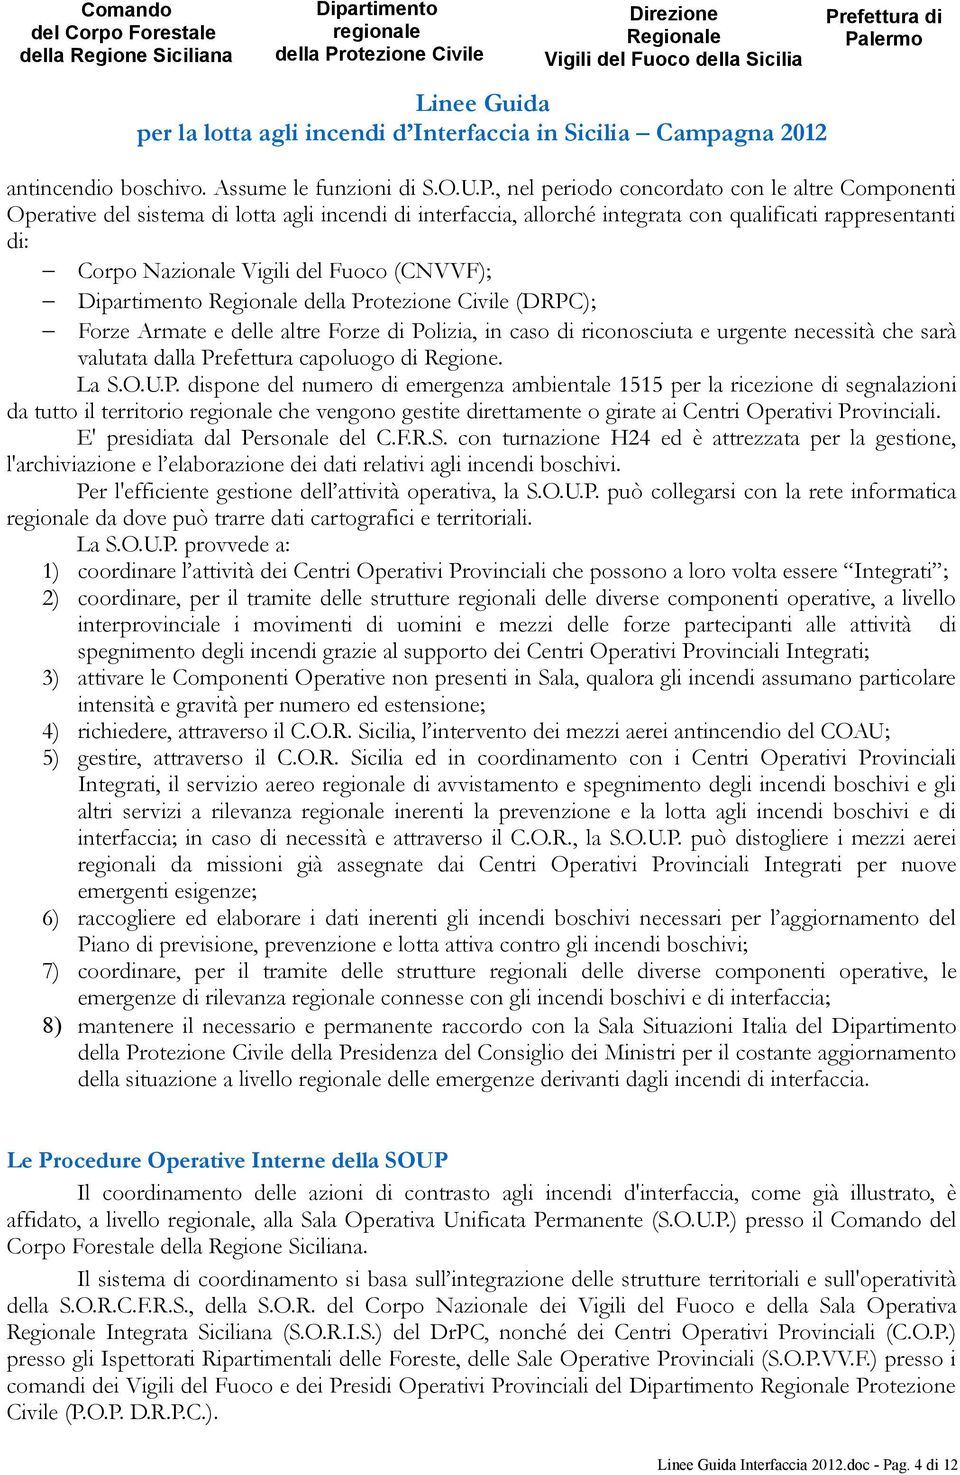 (CNVVF); Dipartimento regionale della Protezione Civile Direzione Regionale Vigili del Fuoco della Sicilia Prefettura di Palermo Dipartimento Regionale della Protezione Civile (DRPC); Forze Armate e